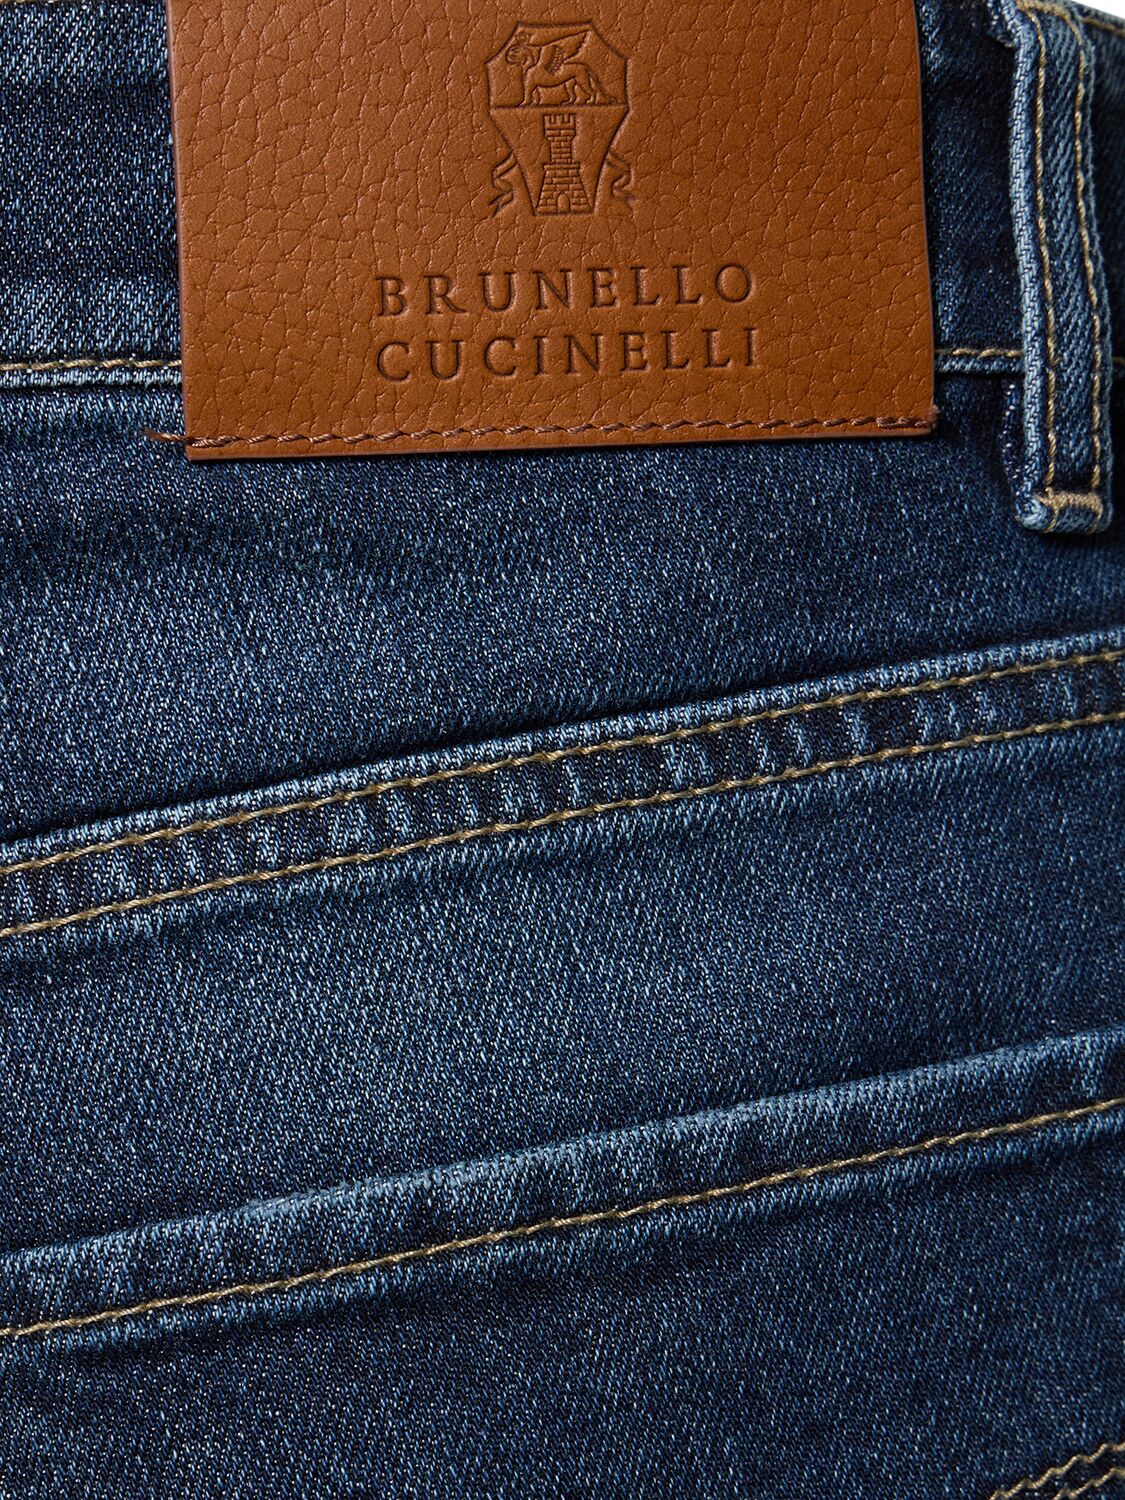 Shop Brunello Cucinelli Stonewashed Cotton Denim Jeans In Dark Wash